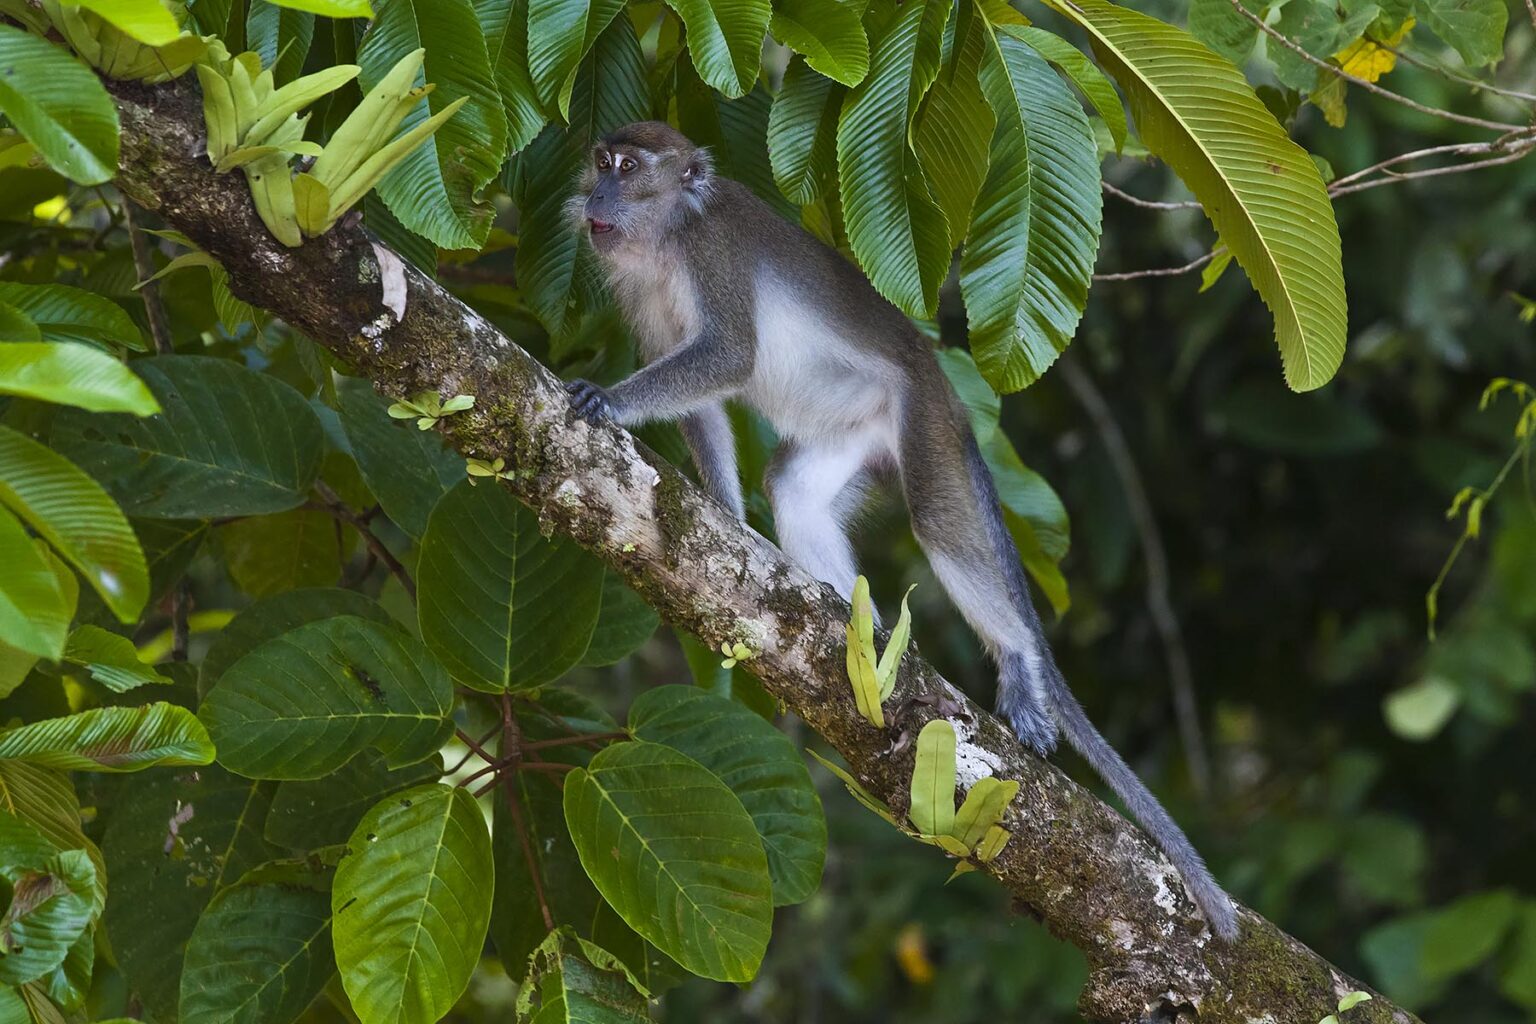 A LONG TAILED MACAQUE (Macaca fascicularis) in the KINABATANGAN RIVER WILDLIFE SANCTUARY - SABAH, BORNEO